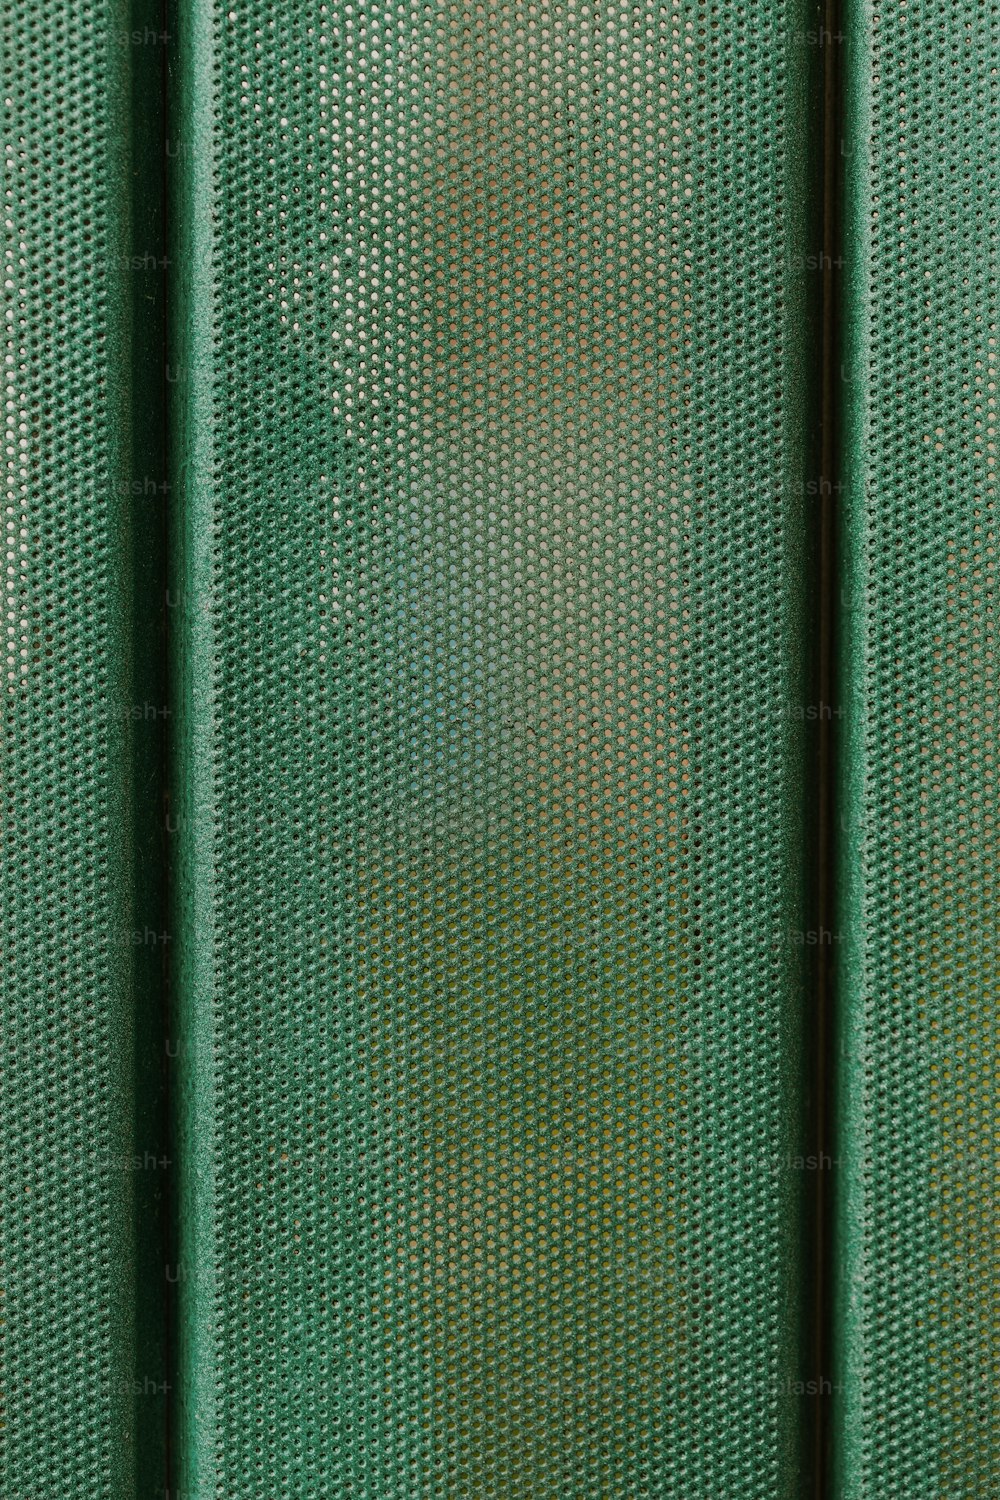 um close up de uma tela verde com uma árvore no fundo